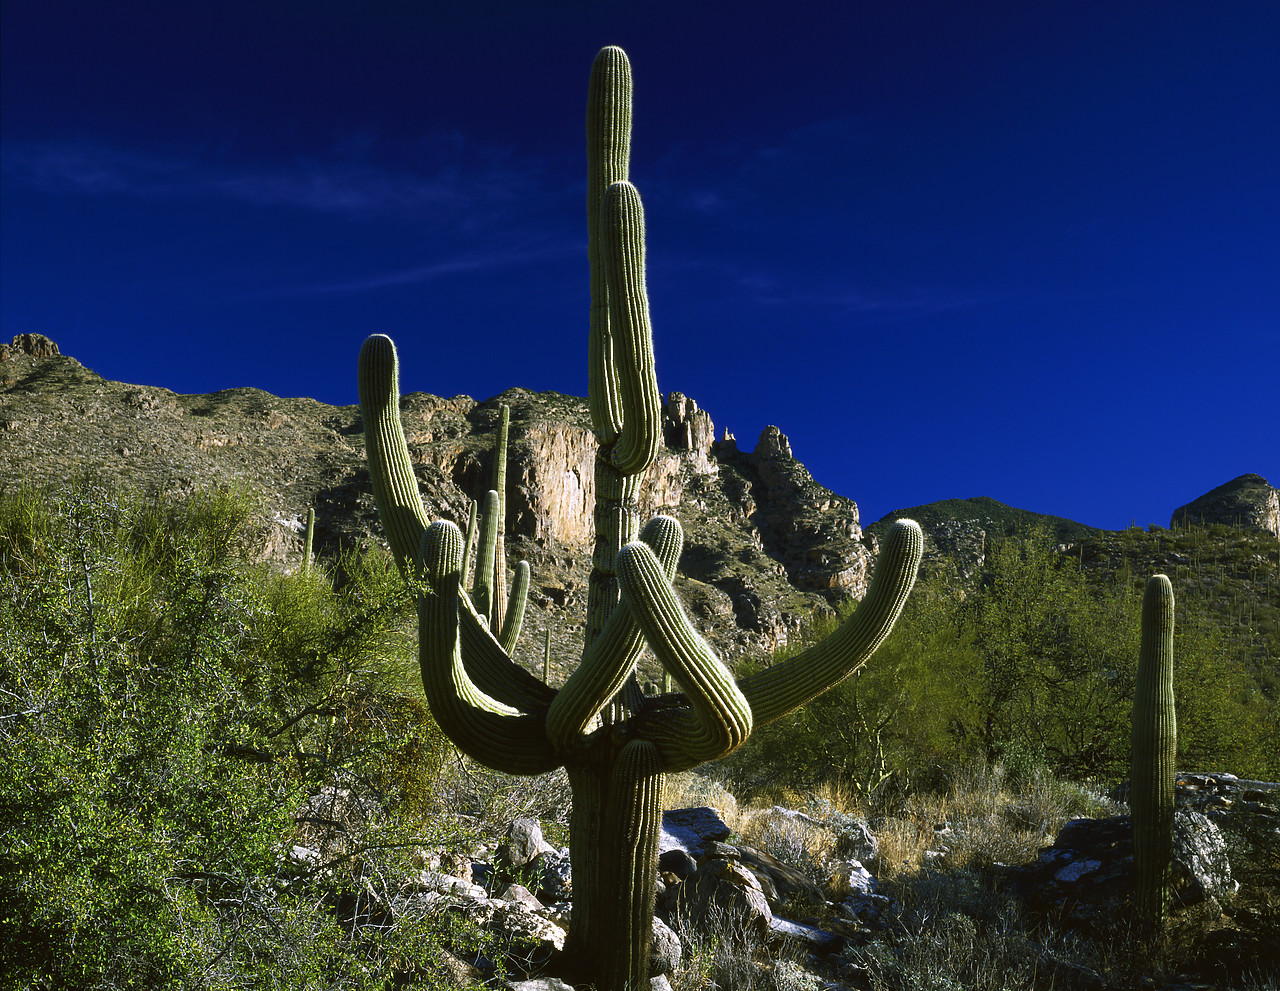 #891934-1 - Involute Saguaro Cacti, Tucson, Arizona, USA